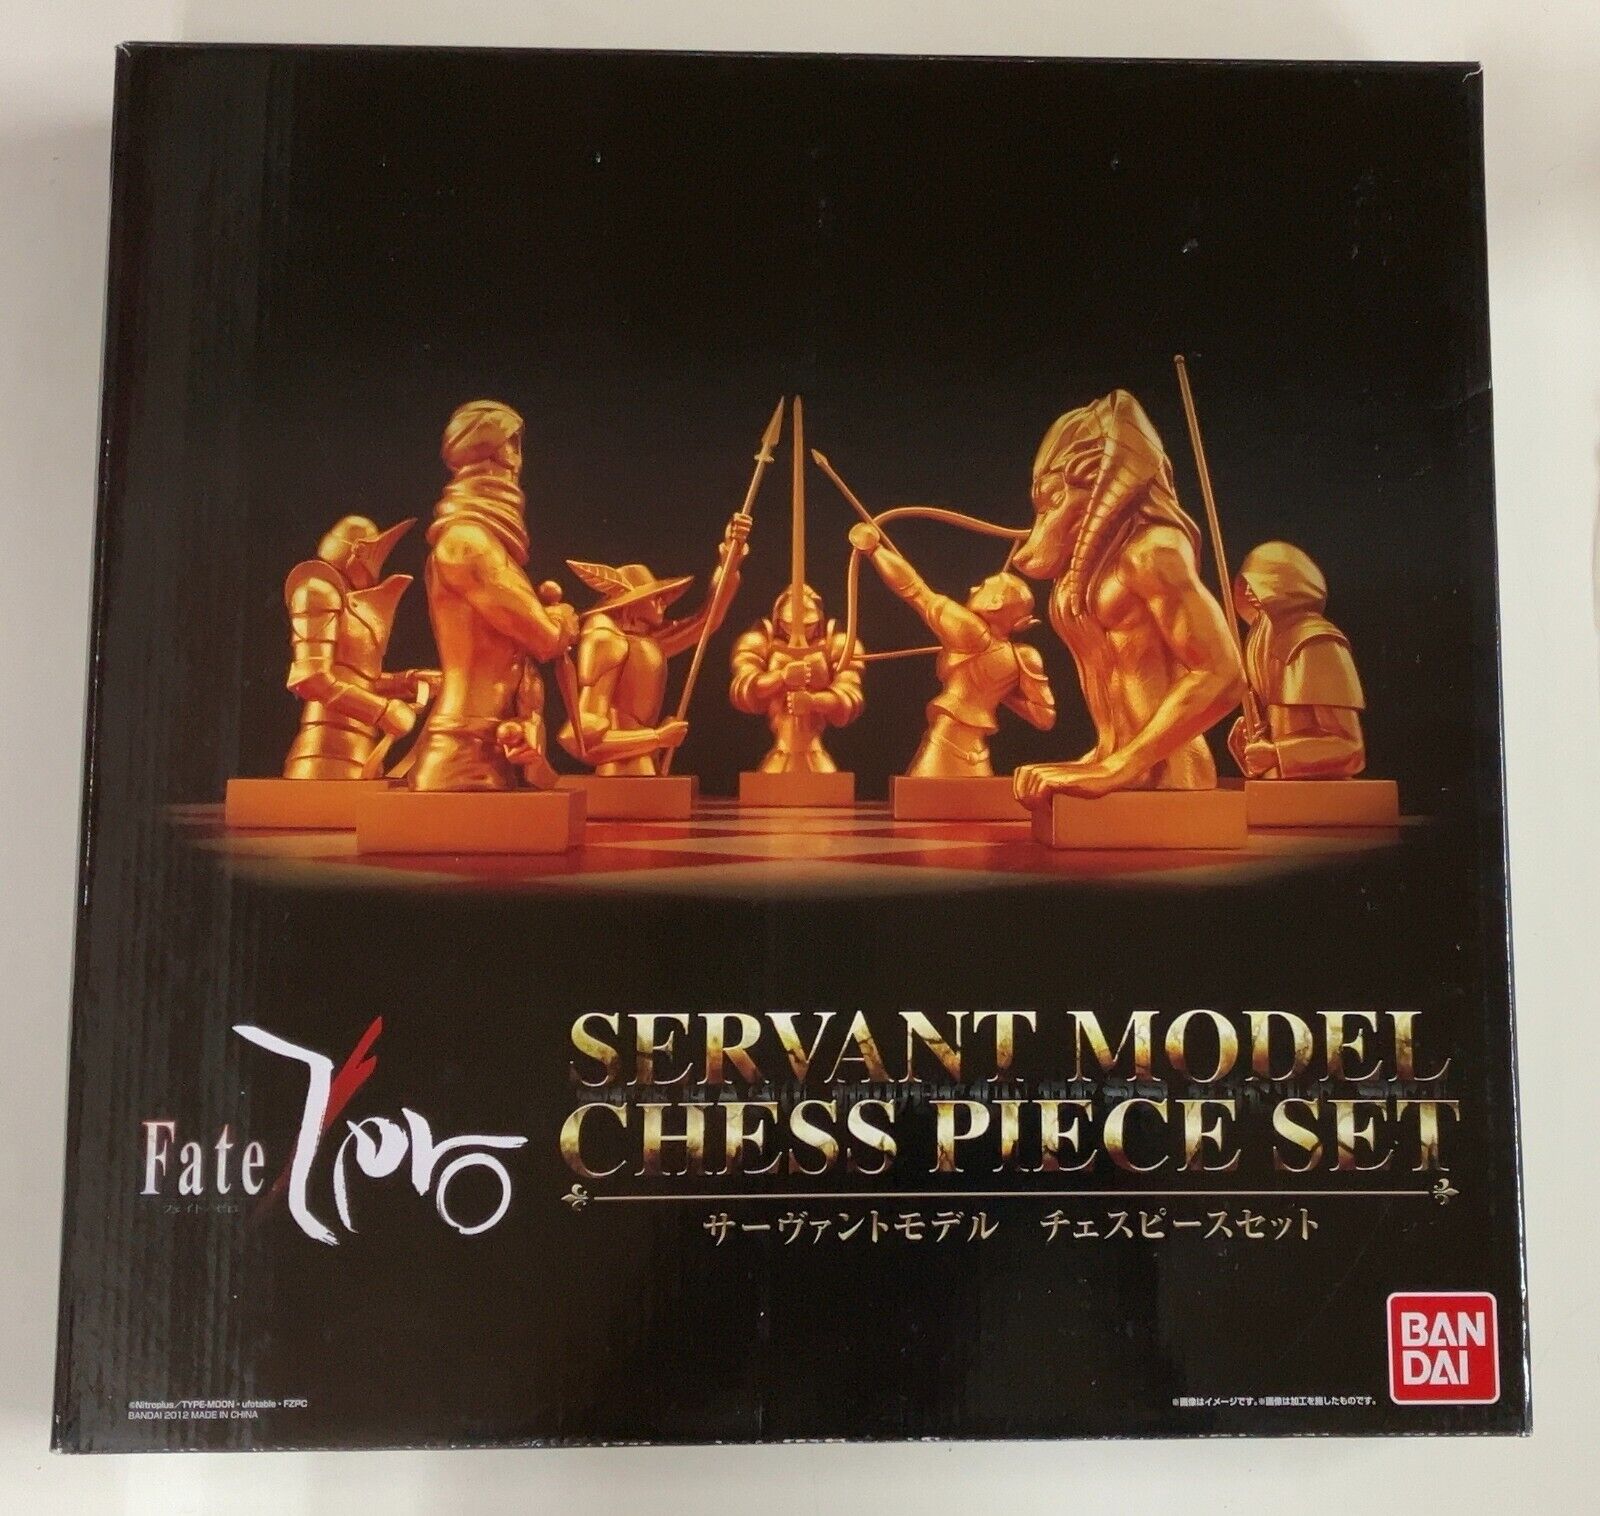 Fate/Zero Servant Model Chess Piece Set Premium Bandai Limited Edition